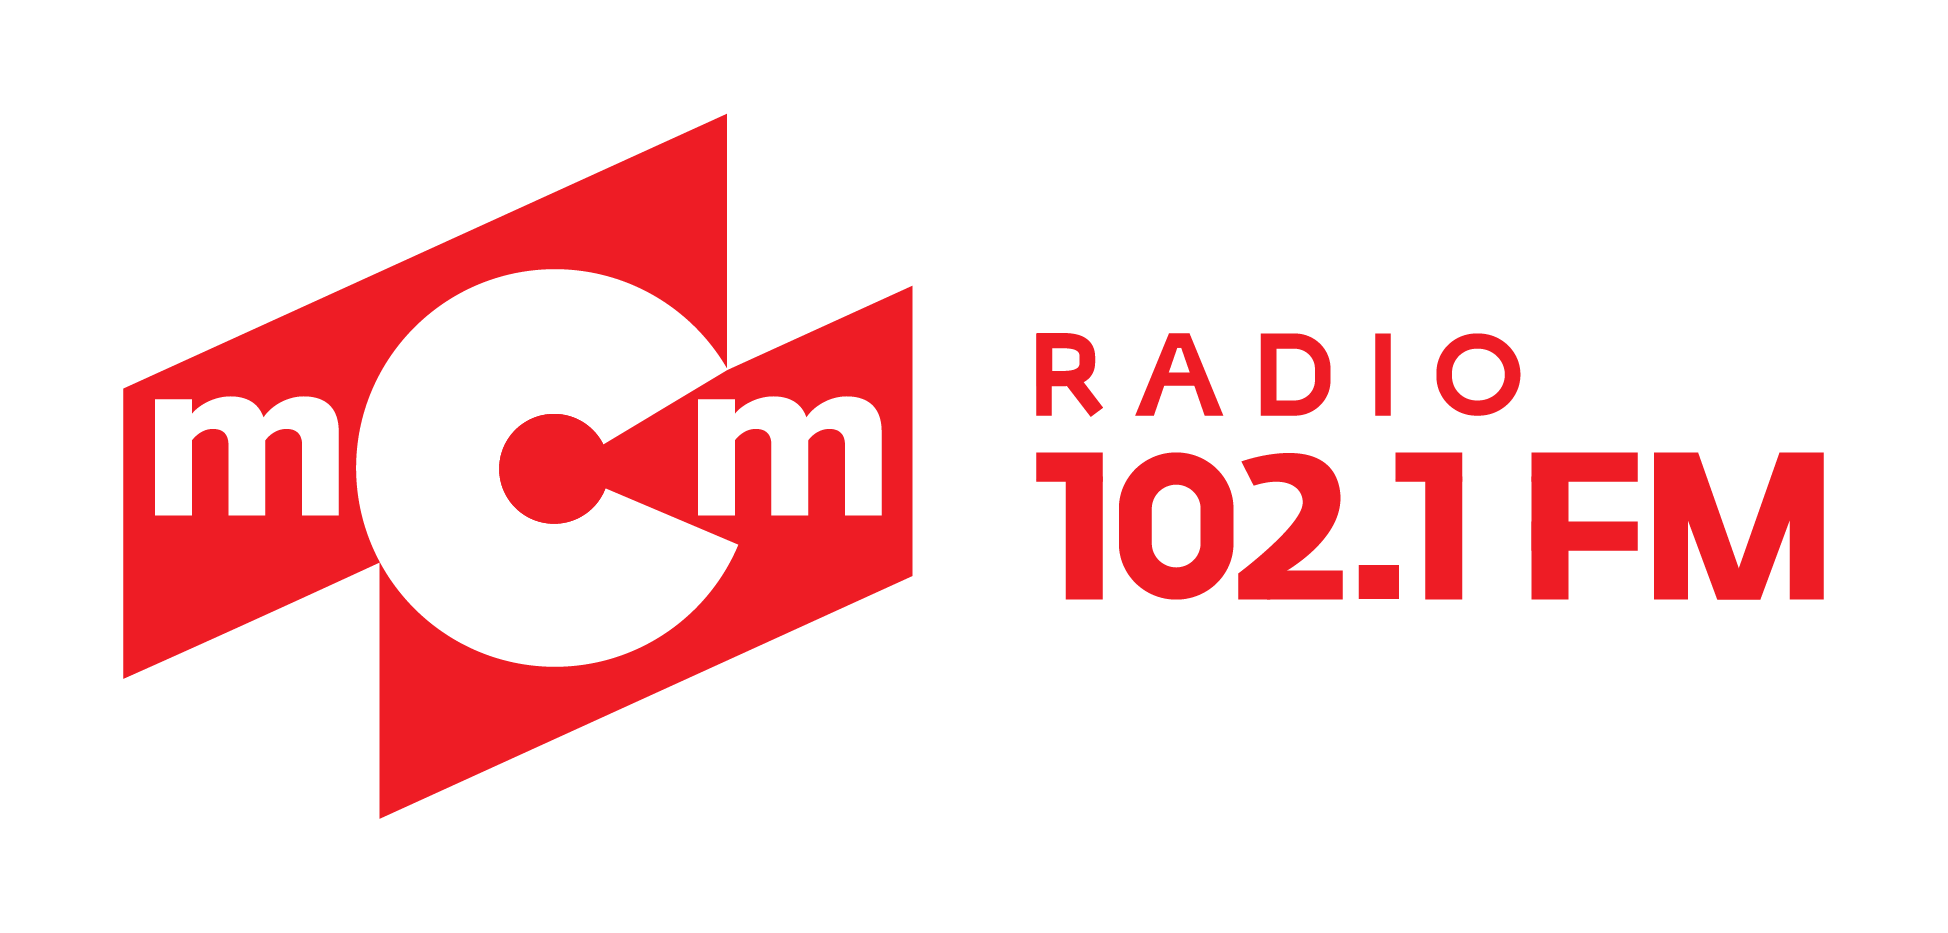 MCM радио. Радио МСМ логотип. МСМ радио Иркутск. Логотип радио МСМ 102.1. Радио фм ижевск